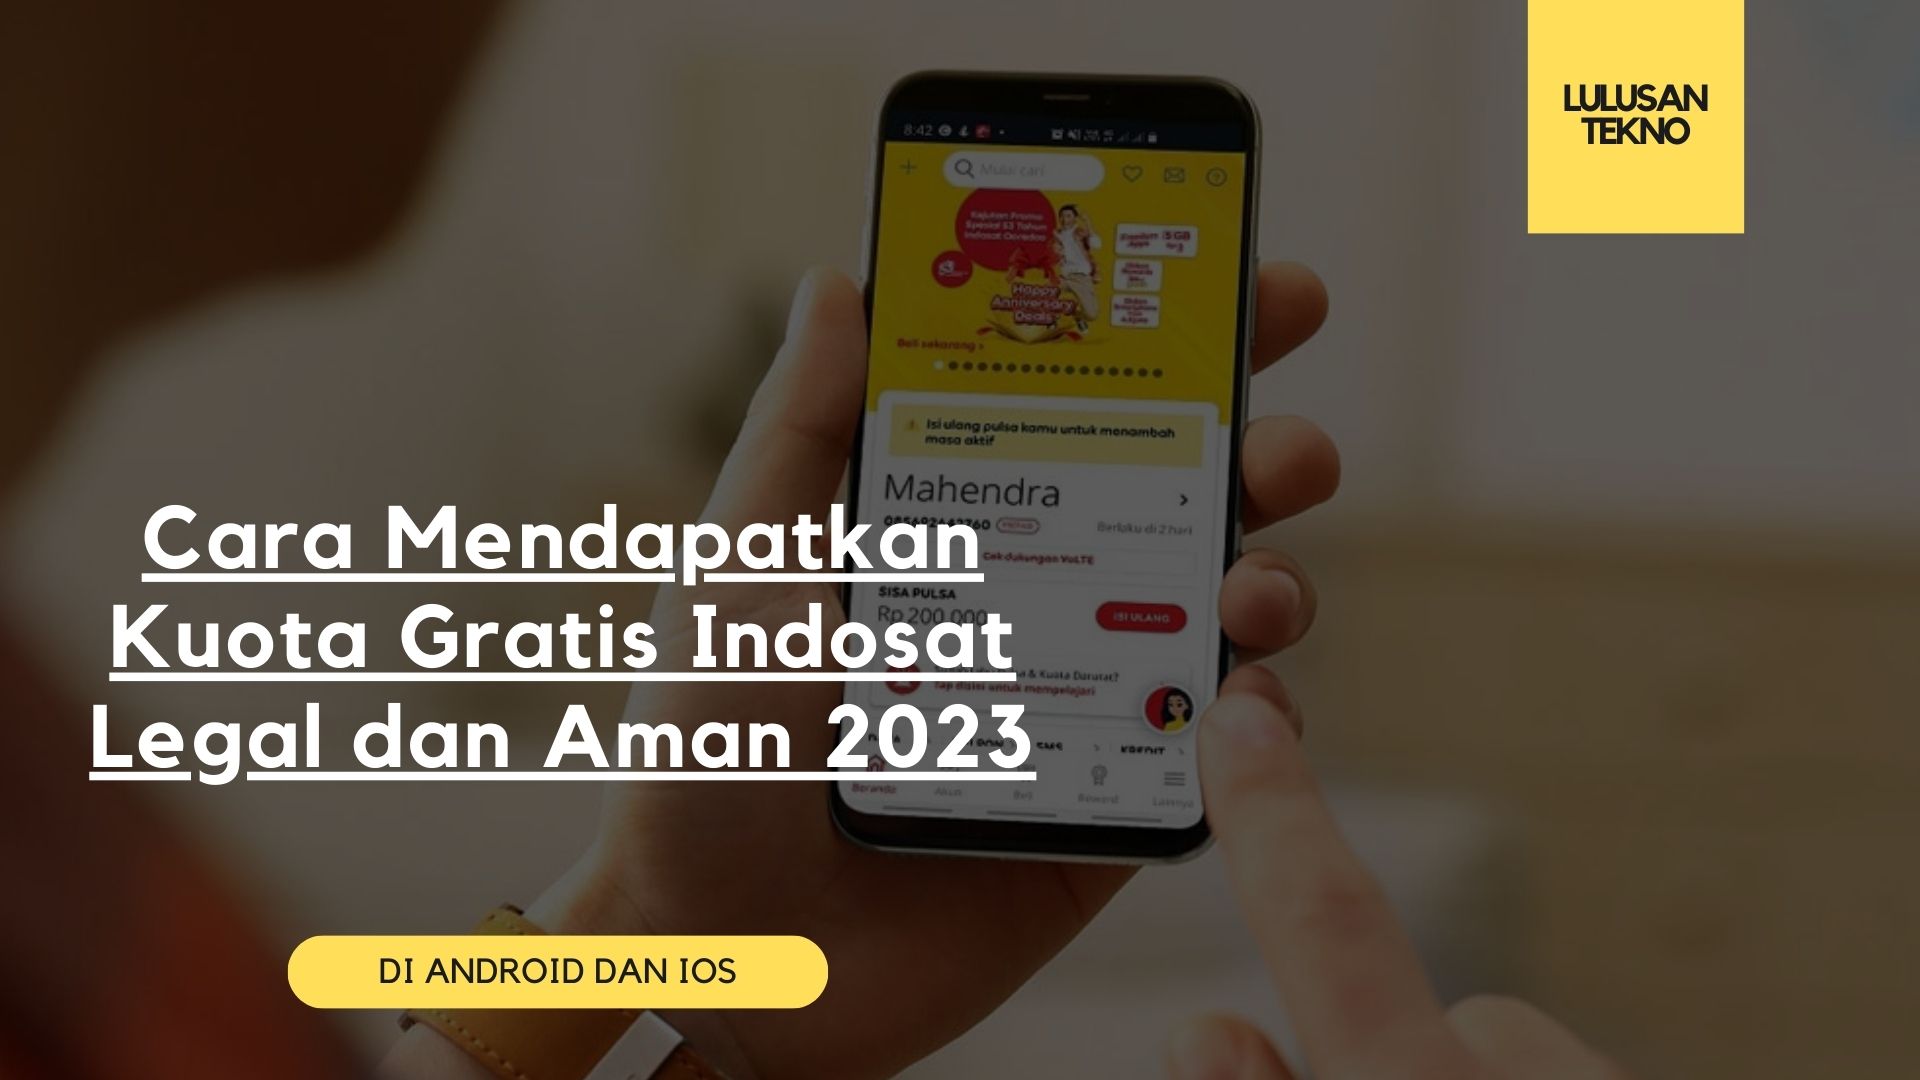 Cara Mendapatkan Kuota Gratis Indosat Legal dan Aman 2023